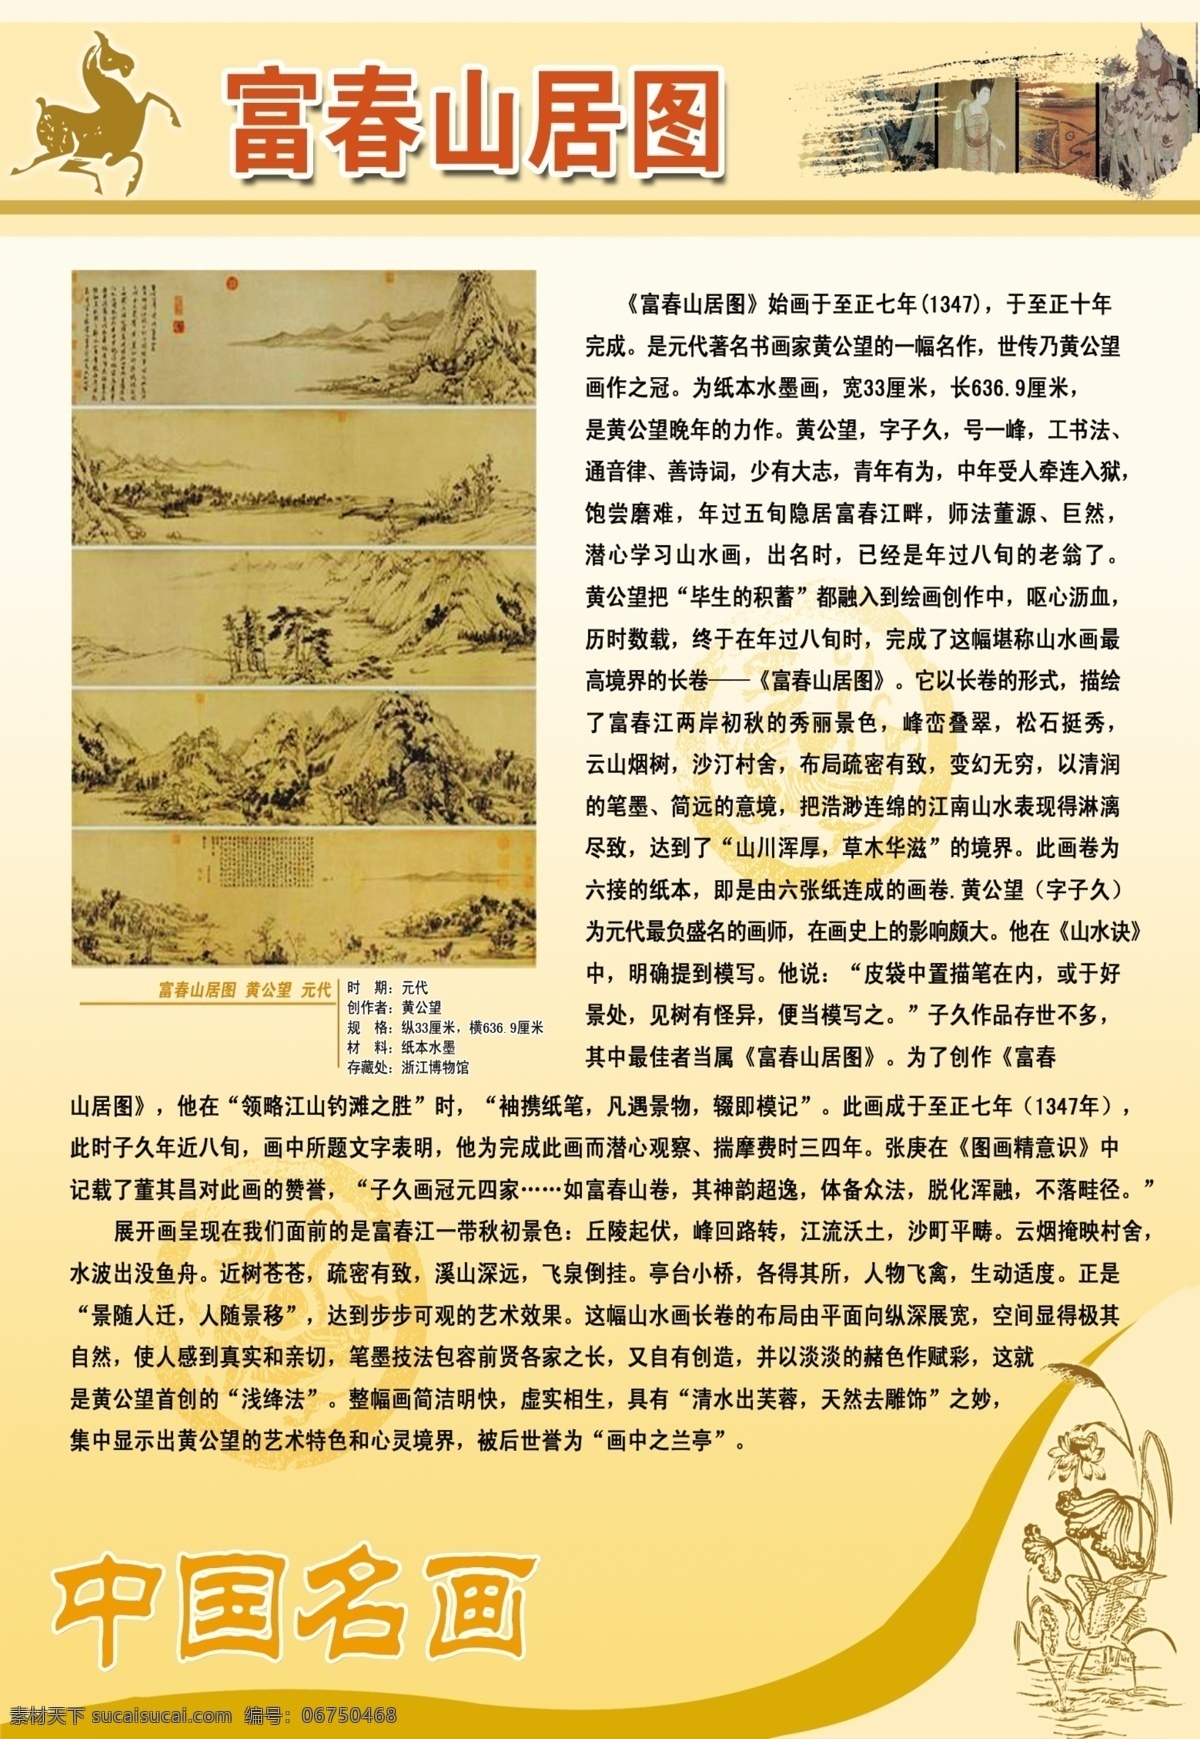 名画赏析 中国名画 富春山居图 名画鉴赏 古代名画 名画展板 展板模板